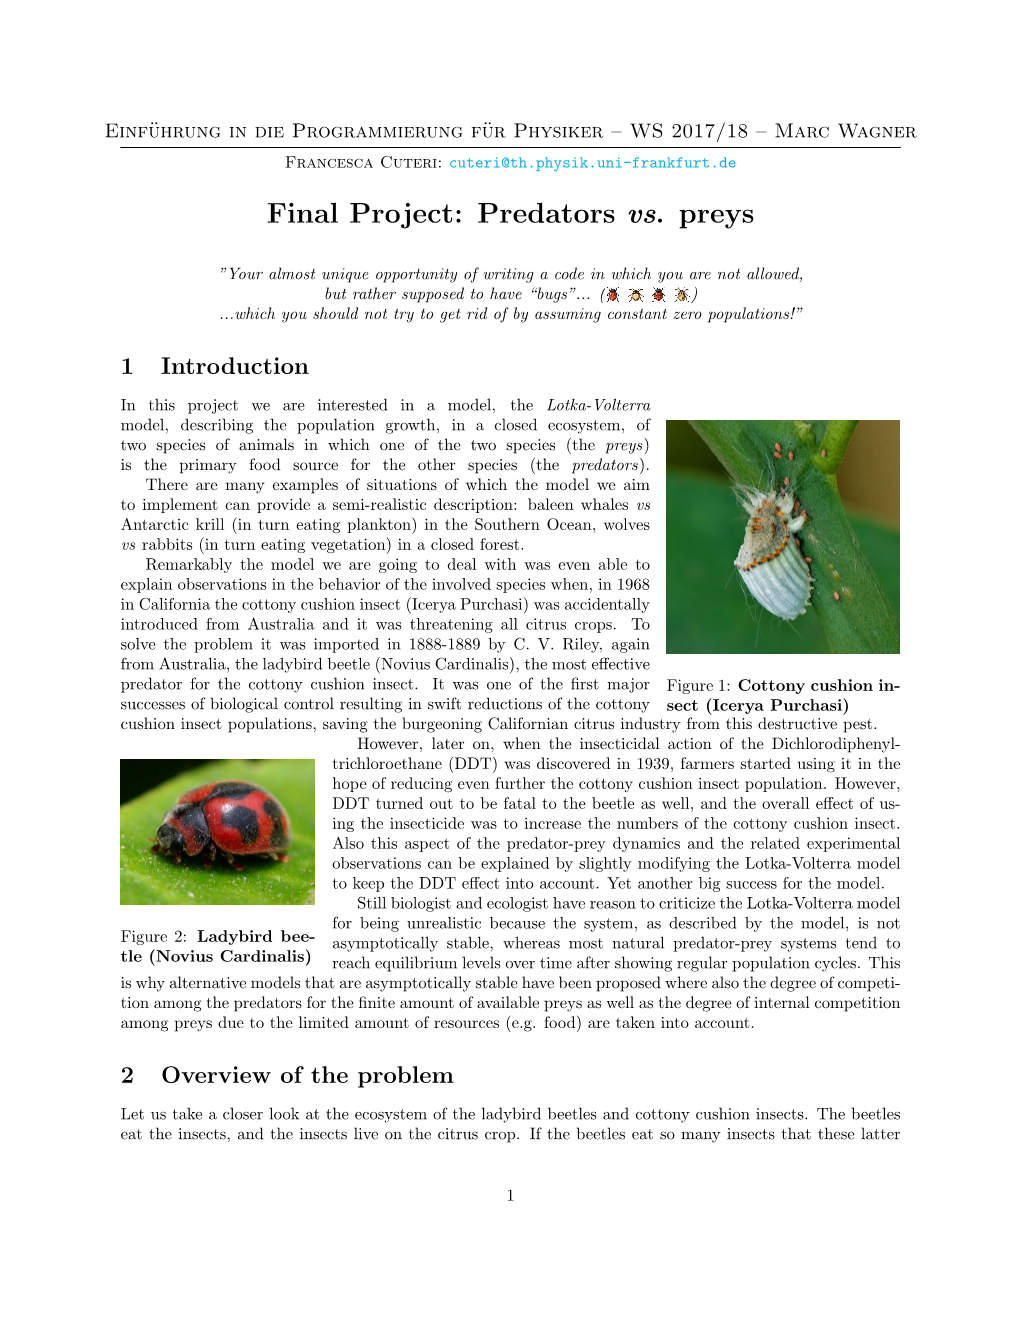 Final Project: Predators Vs. Preys